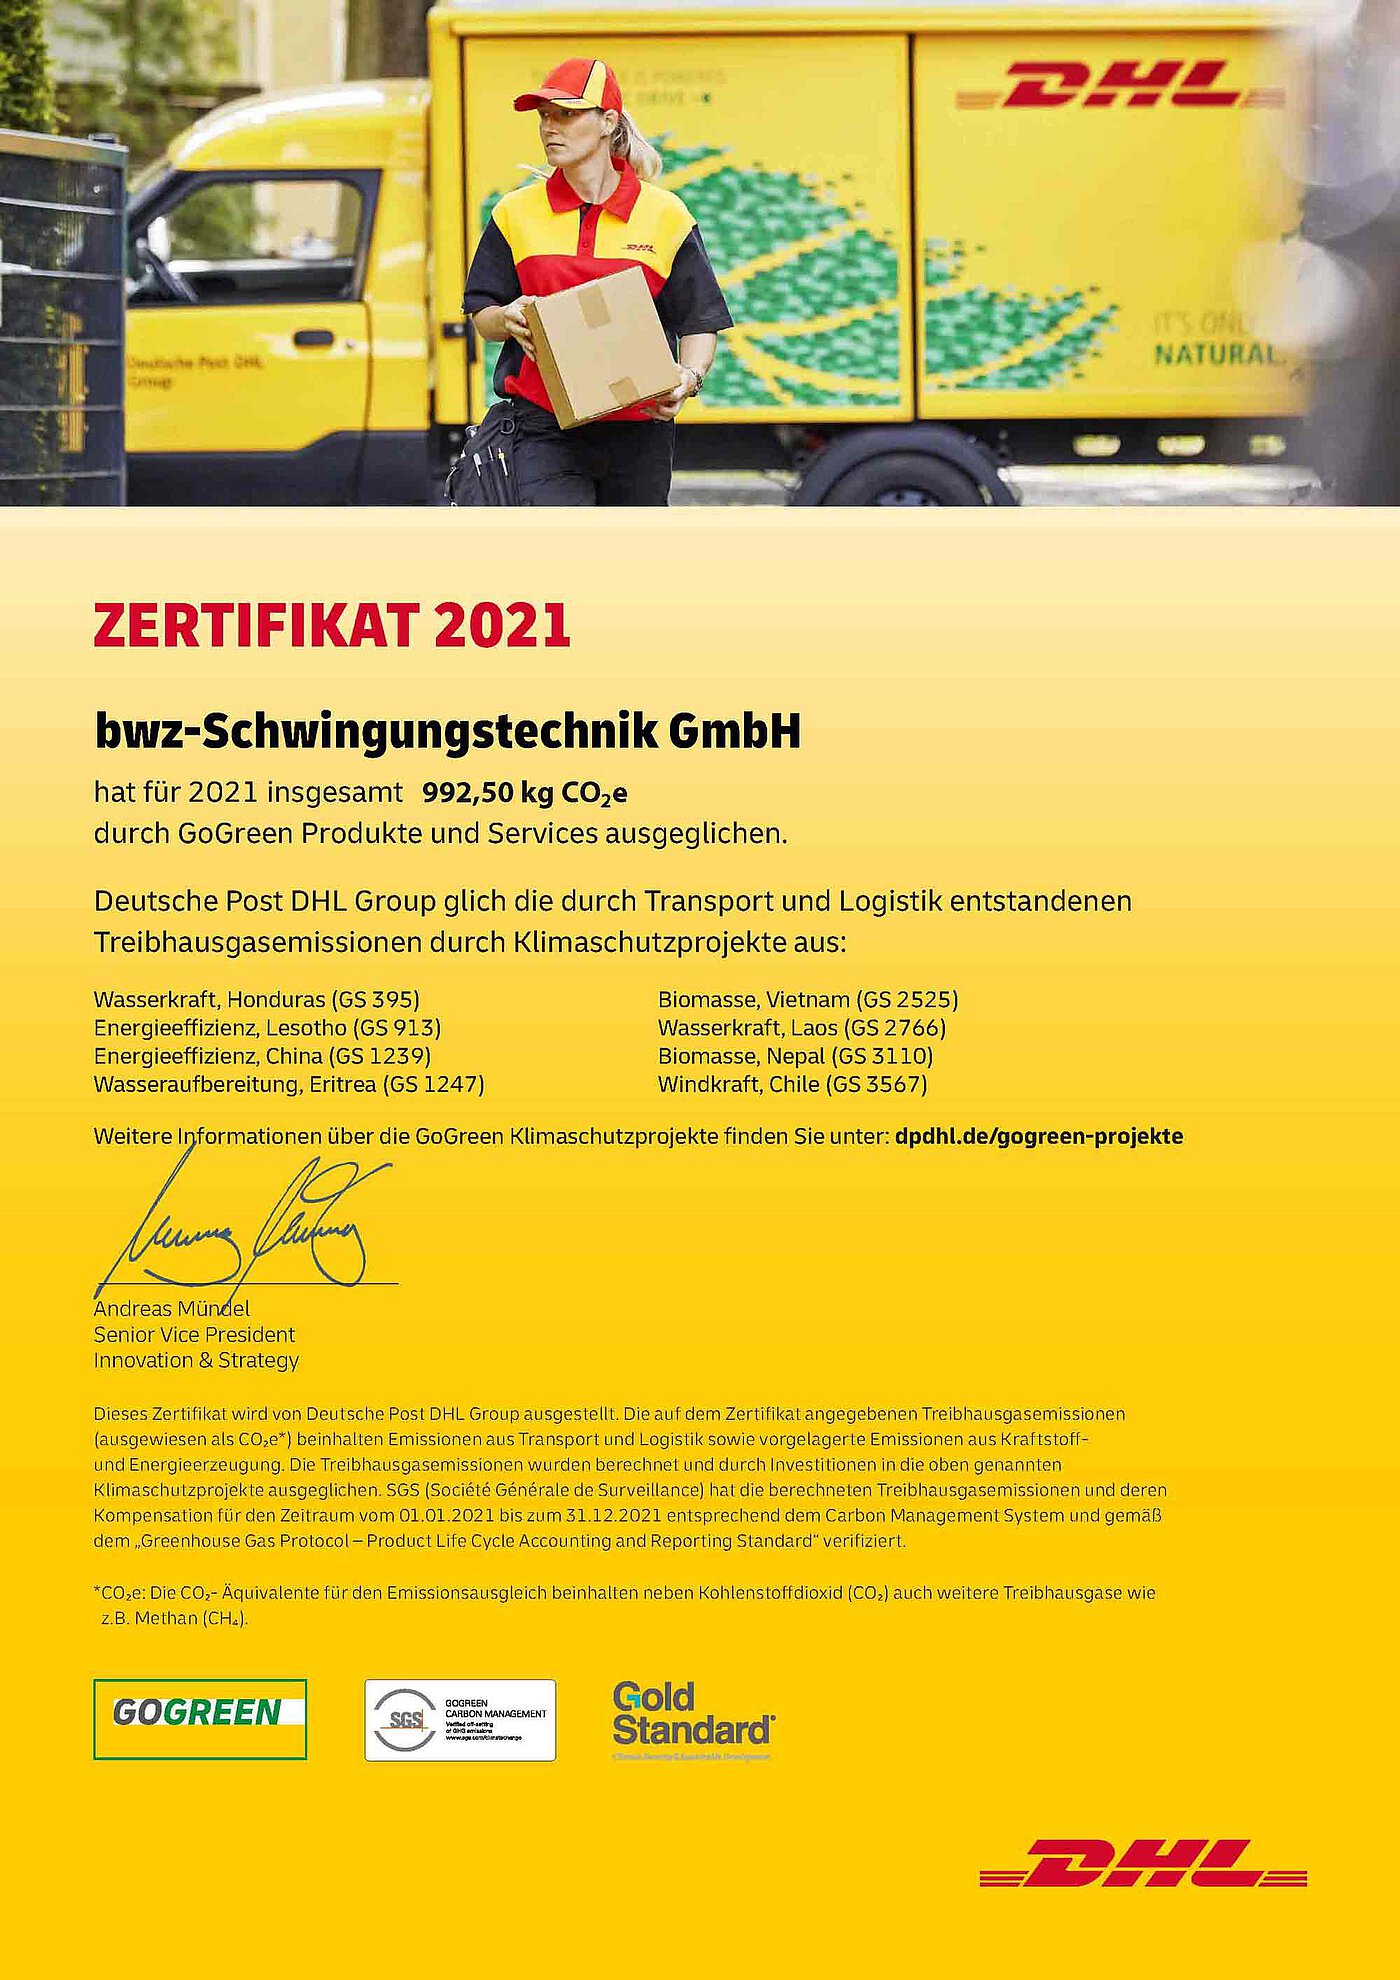 eine gelbe Urkunde vom Paketdienstleister DHL, auf welcher vermerkt ist, daß bwz Schwingungstechnik durch die Nutzung von GoGreen Produkten 992,5 KG CO2-Äquivalenten im Jahr 2021 eingespart hat.